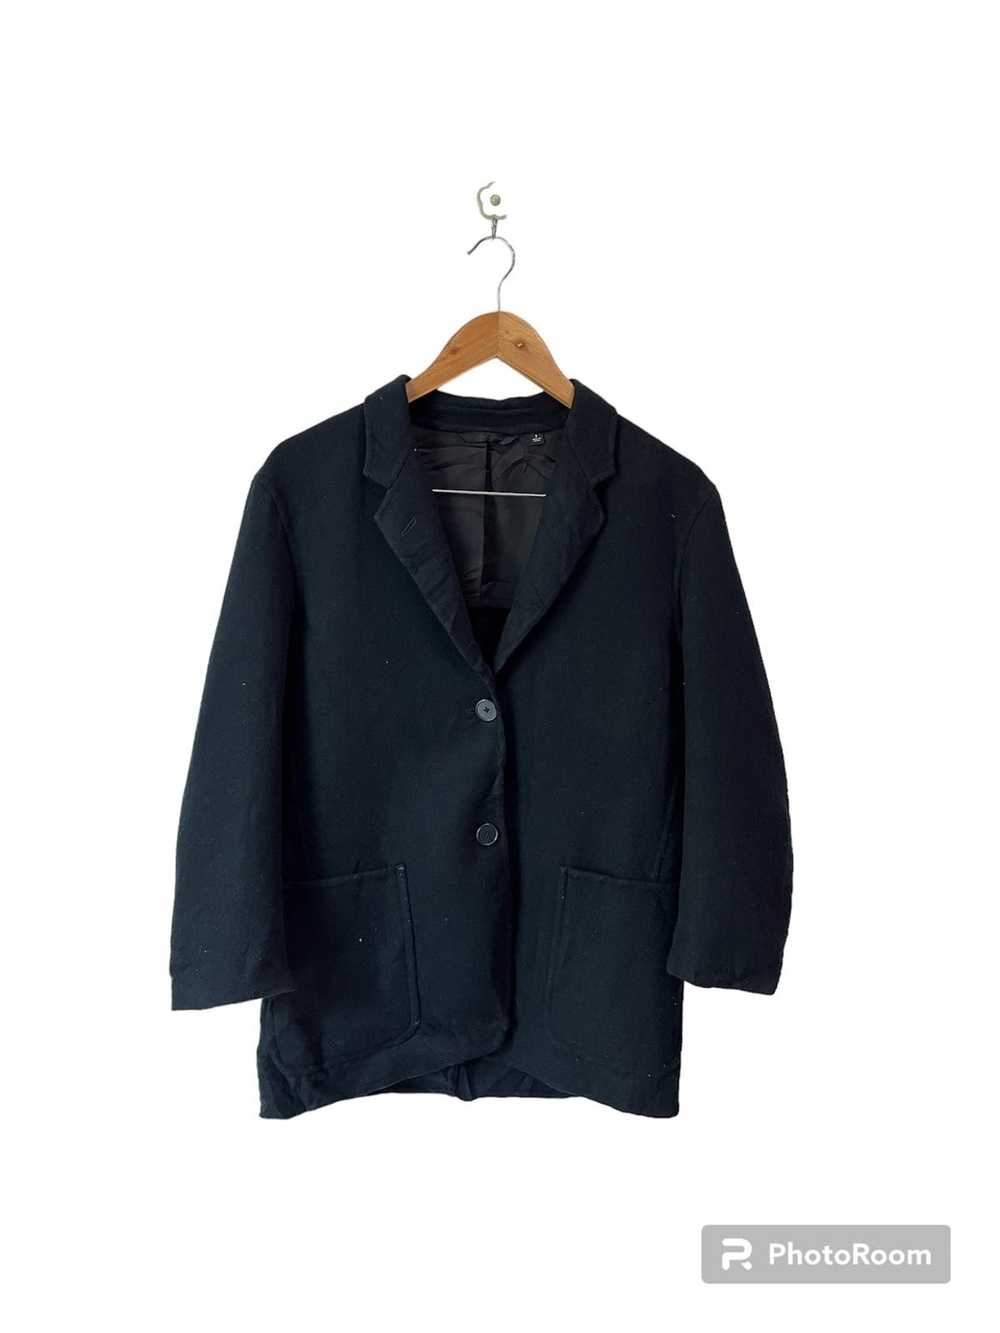 Lemaire × Uniqlo Uniqlo U Blazer Wool Jacket - image 1